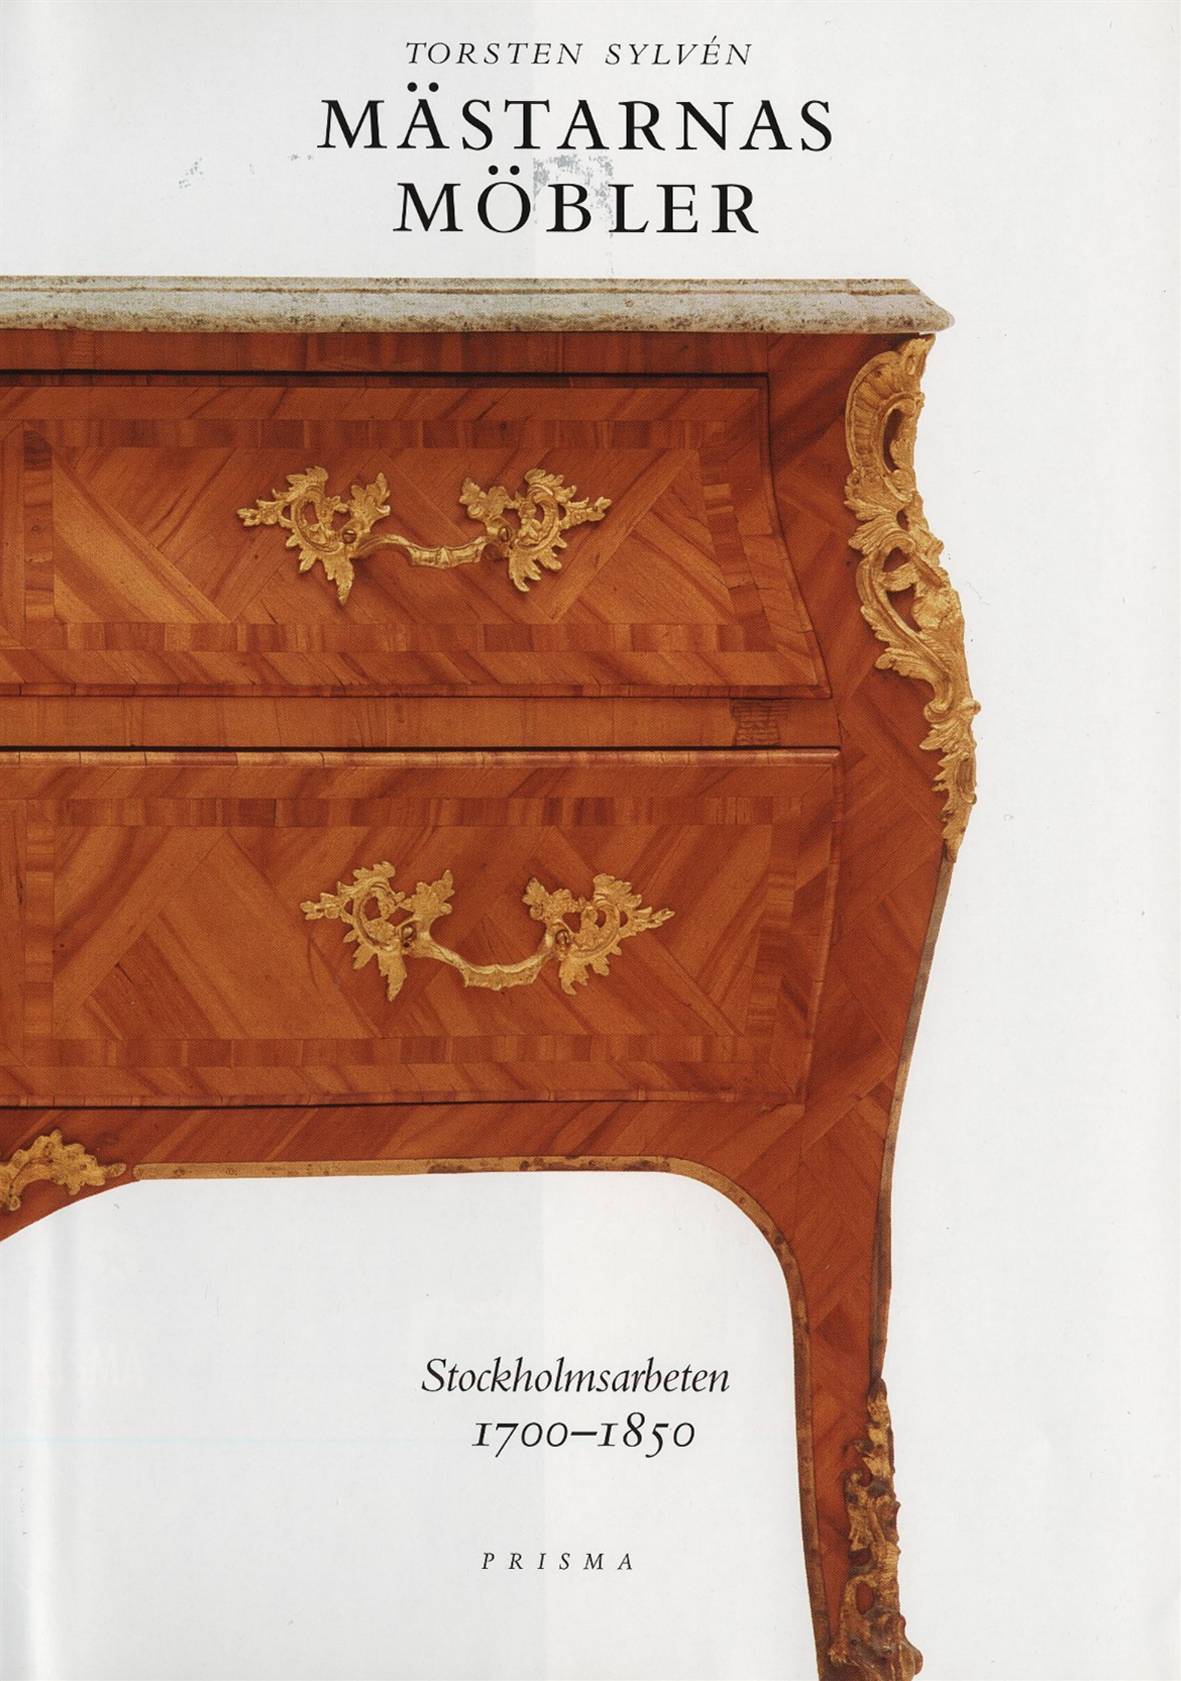 Mästarnas möbler : Stockholmsarbeten 1700-1850